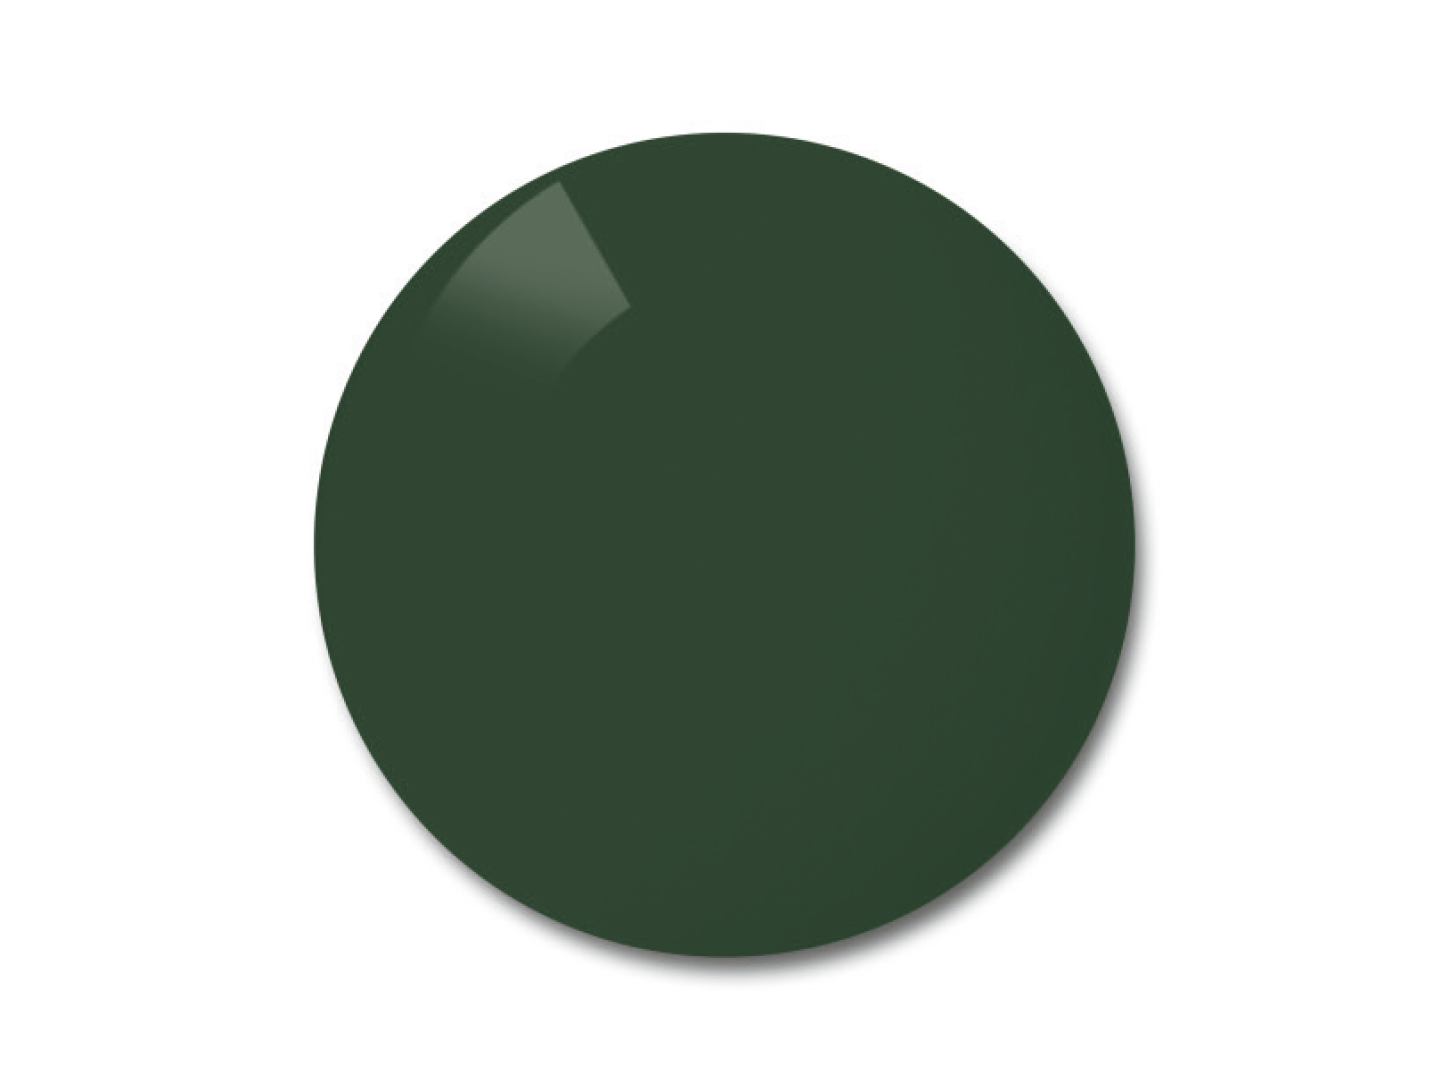 Farveeksempel på Pioneer (grå-grønne) polariserede glas.